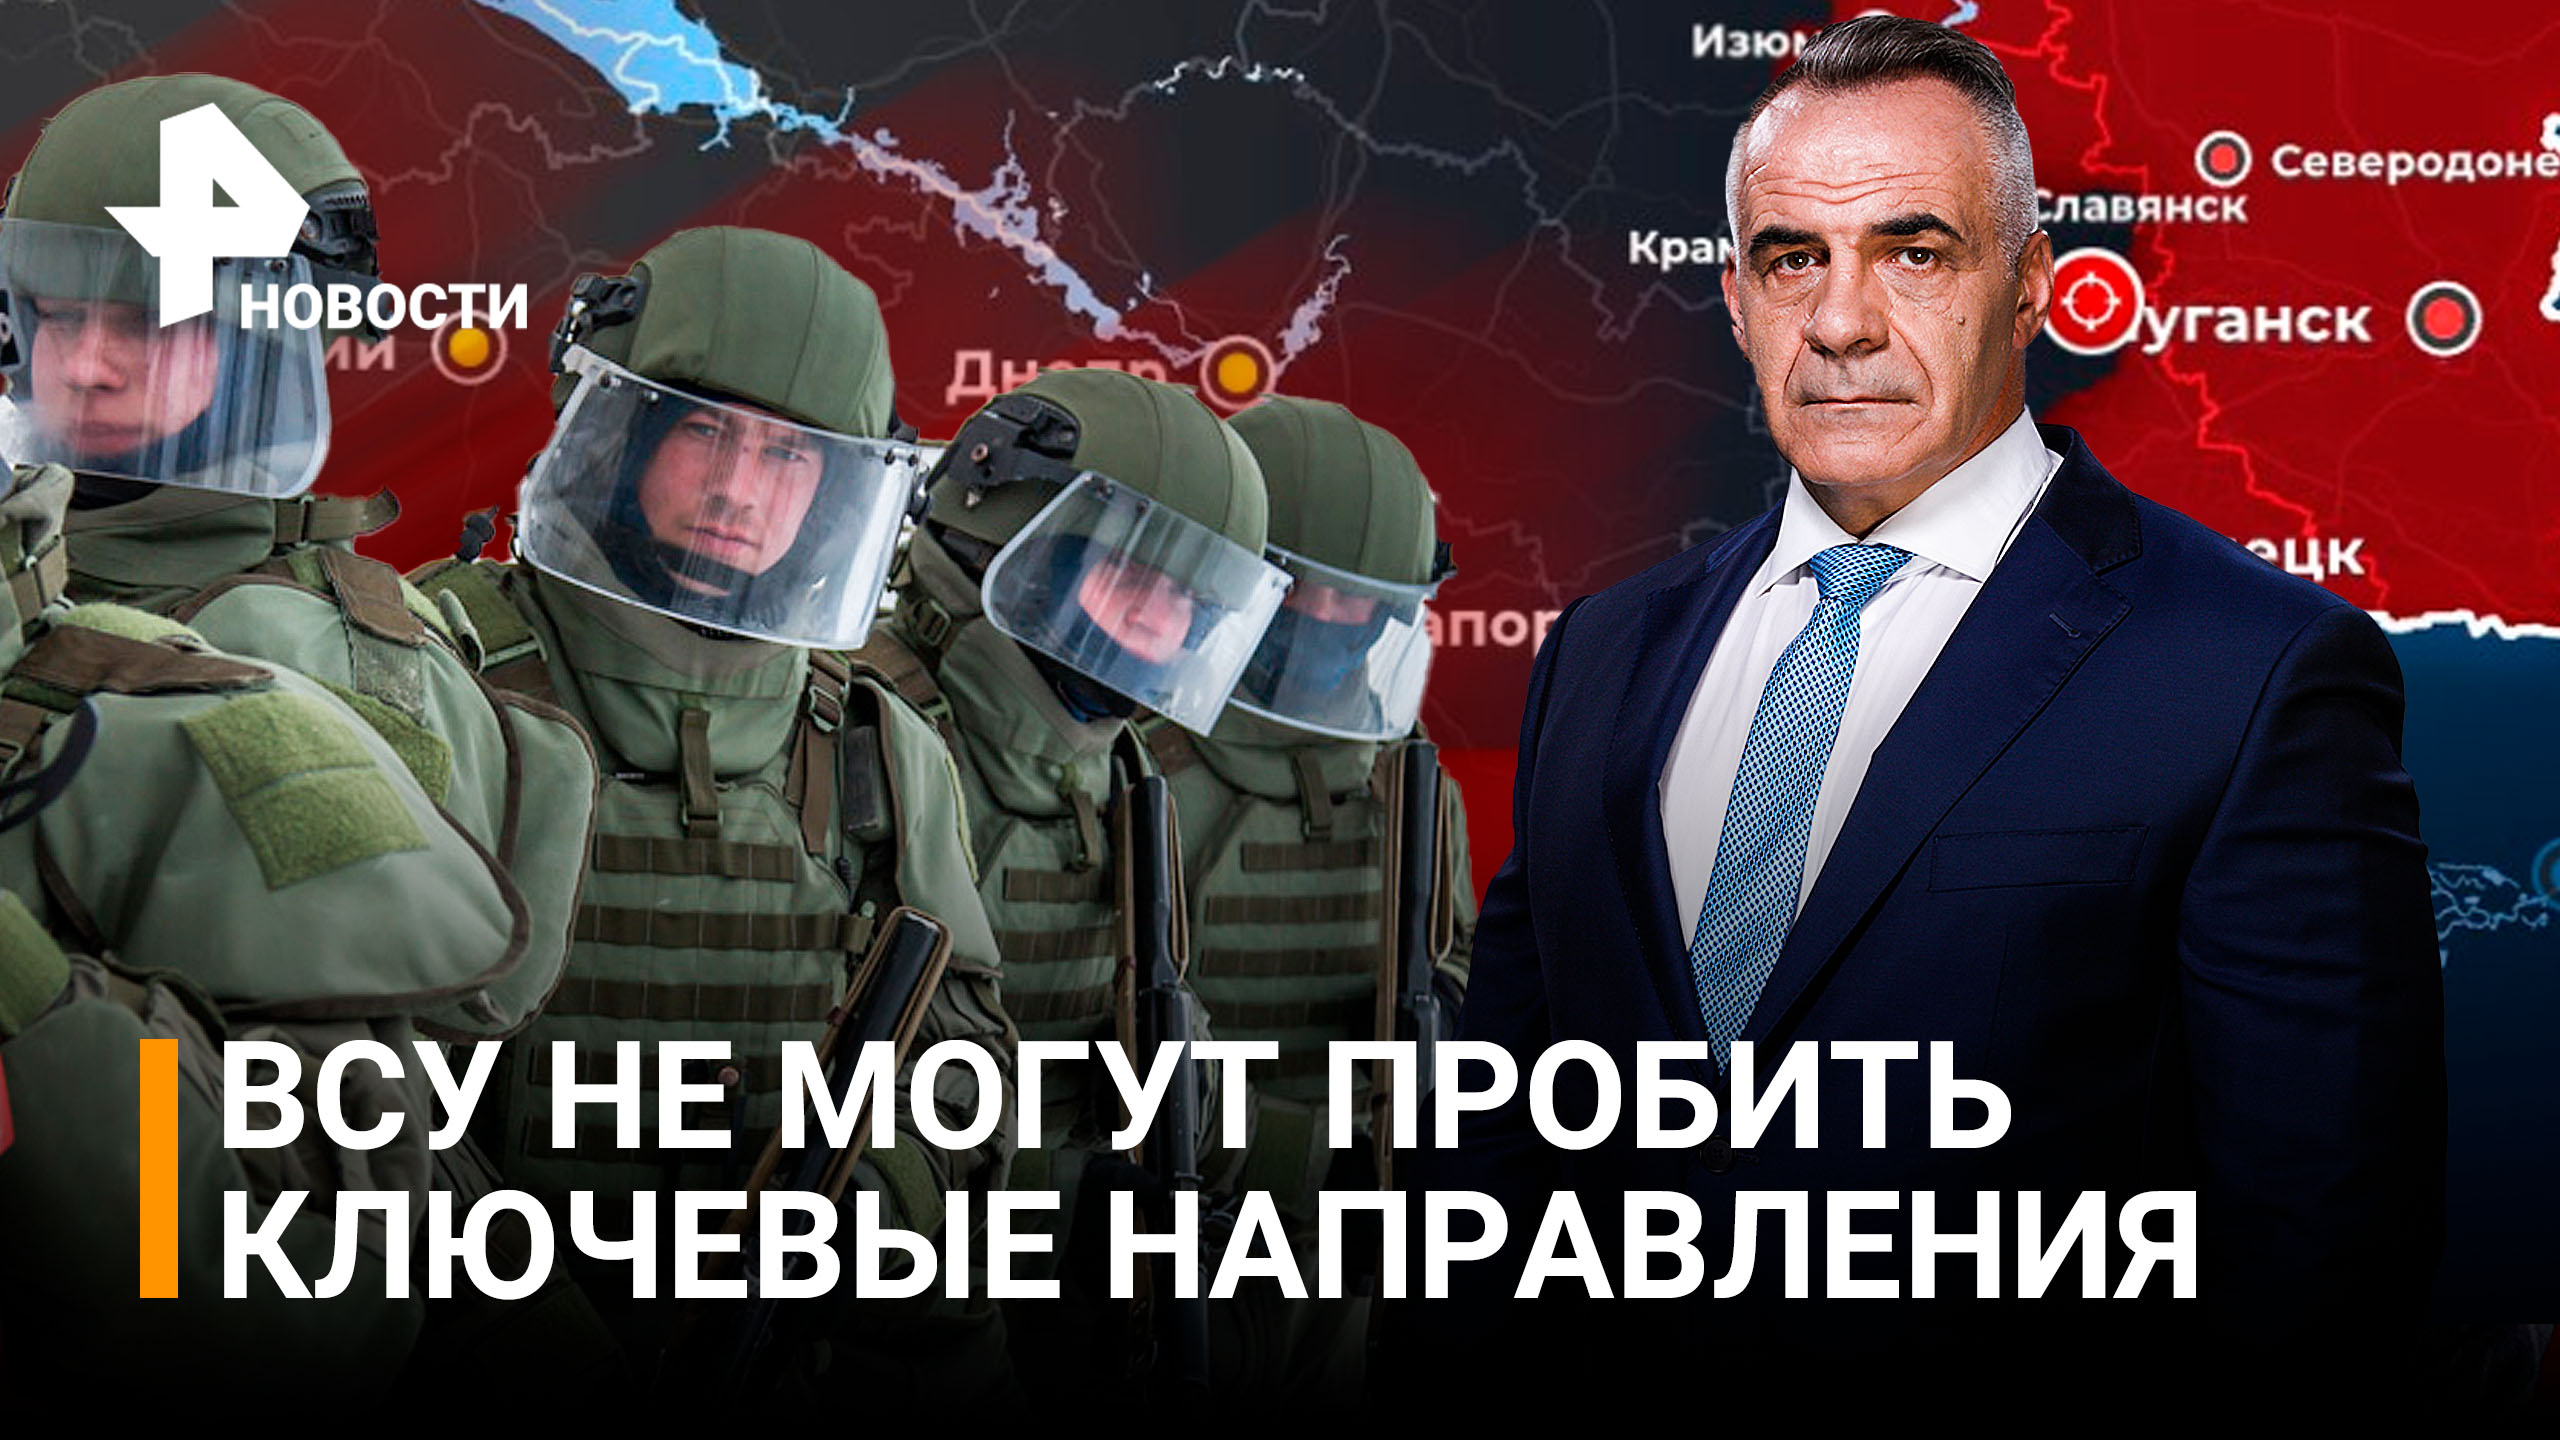 Наступление в ДНР: союзные силы блокируют ВСУ на ключевых направлениях / РЕН Новости